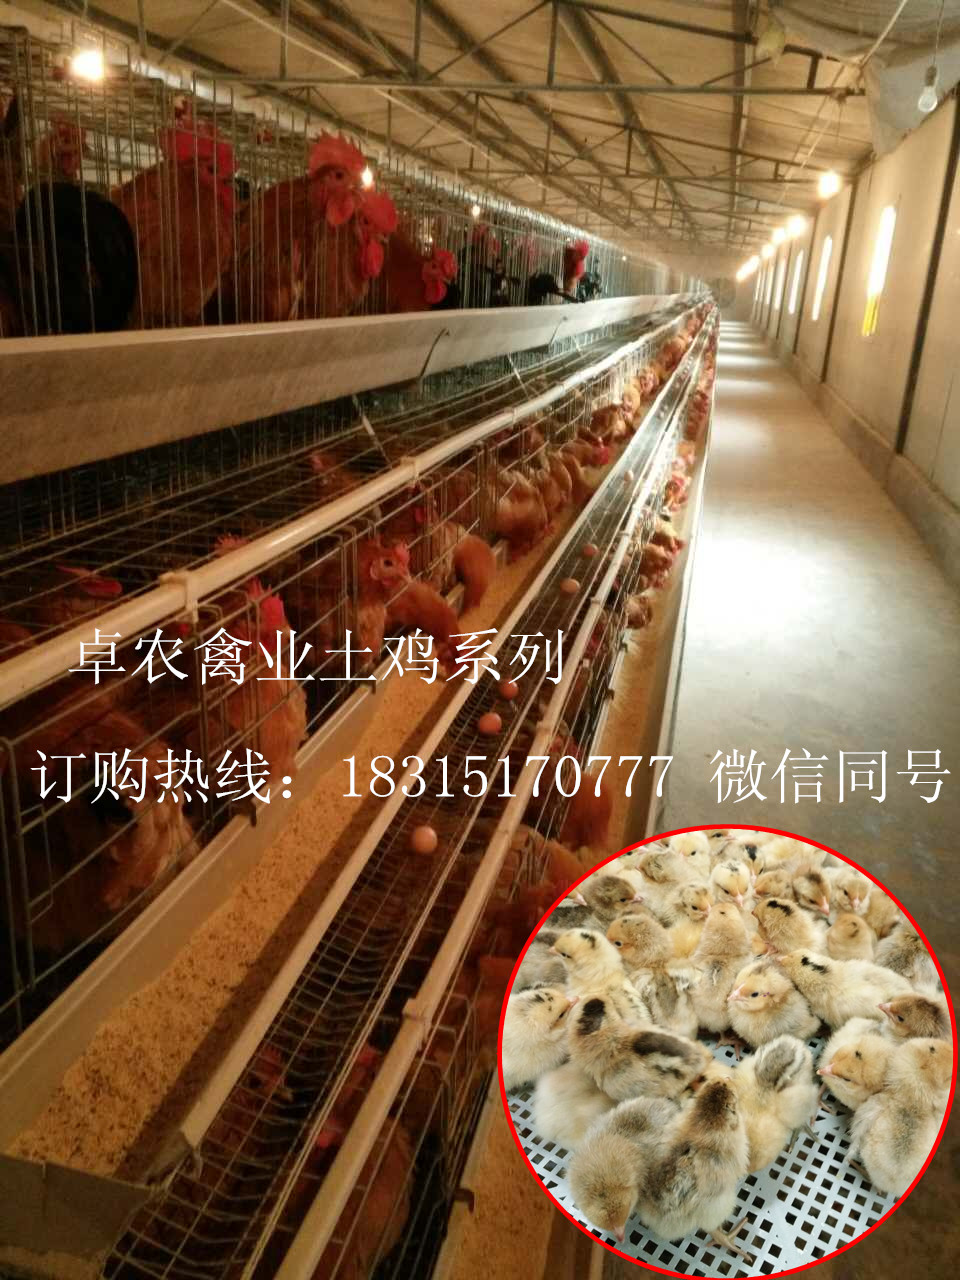 重庆香鸡苗养殖；重庆本地土鸡苗厂家；求购重庆鸡苗批发市场；重庆黑鸡苗价格